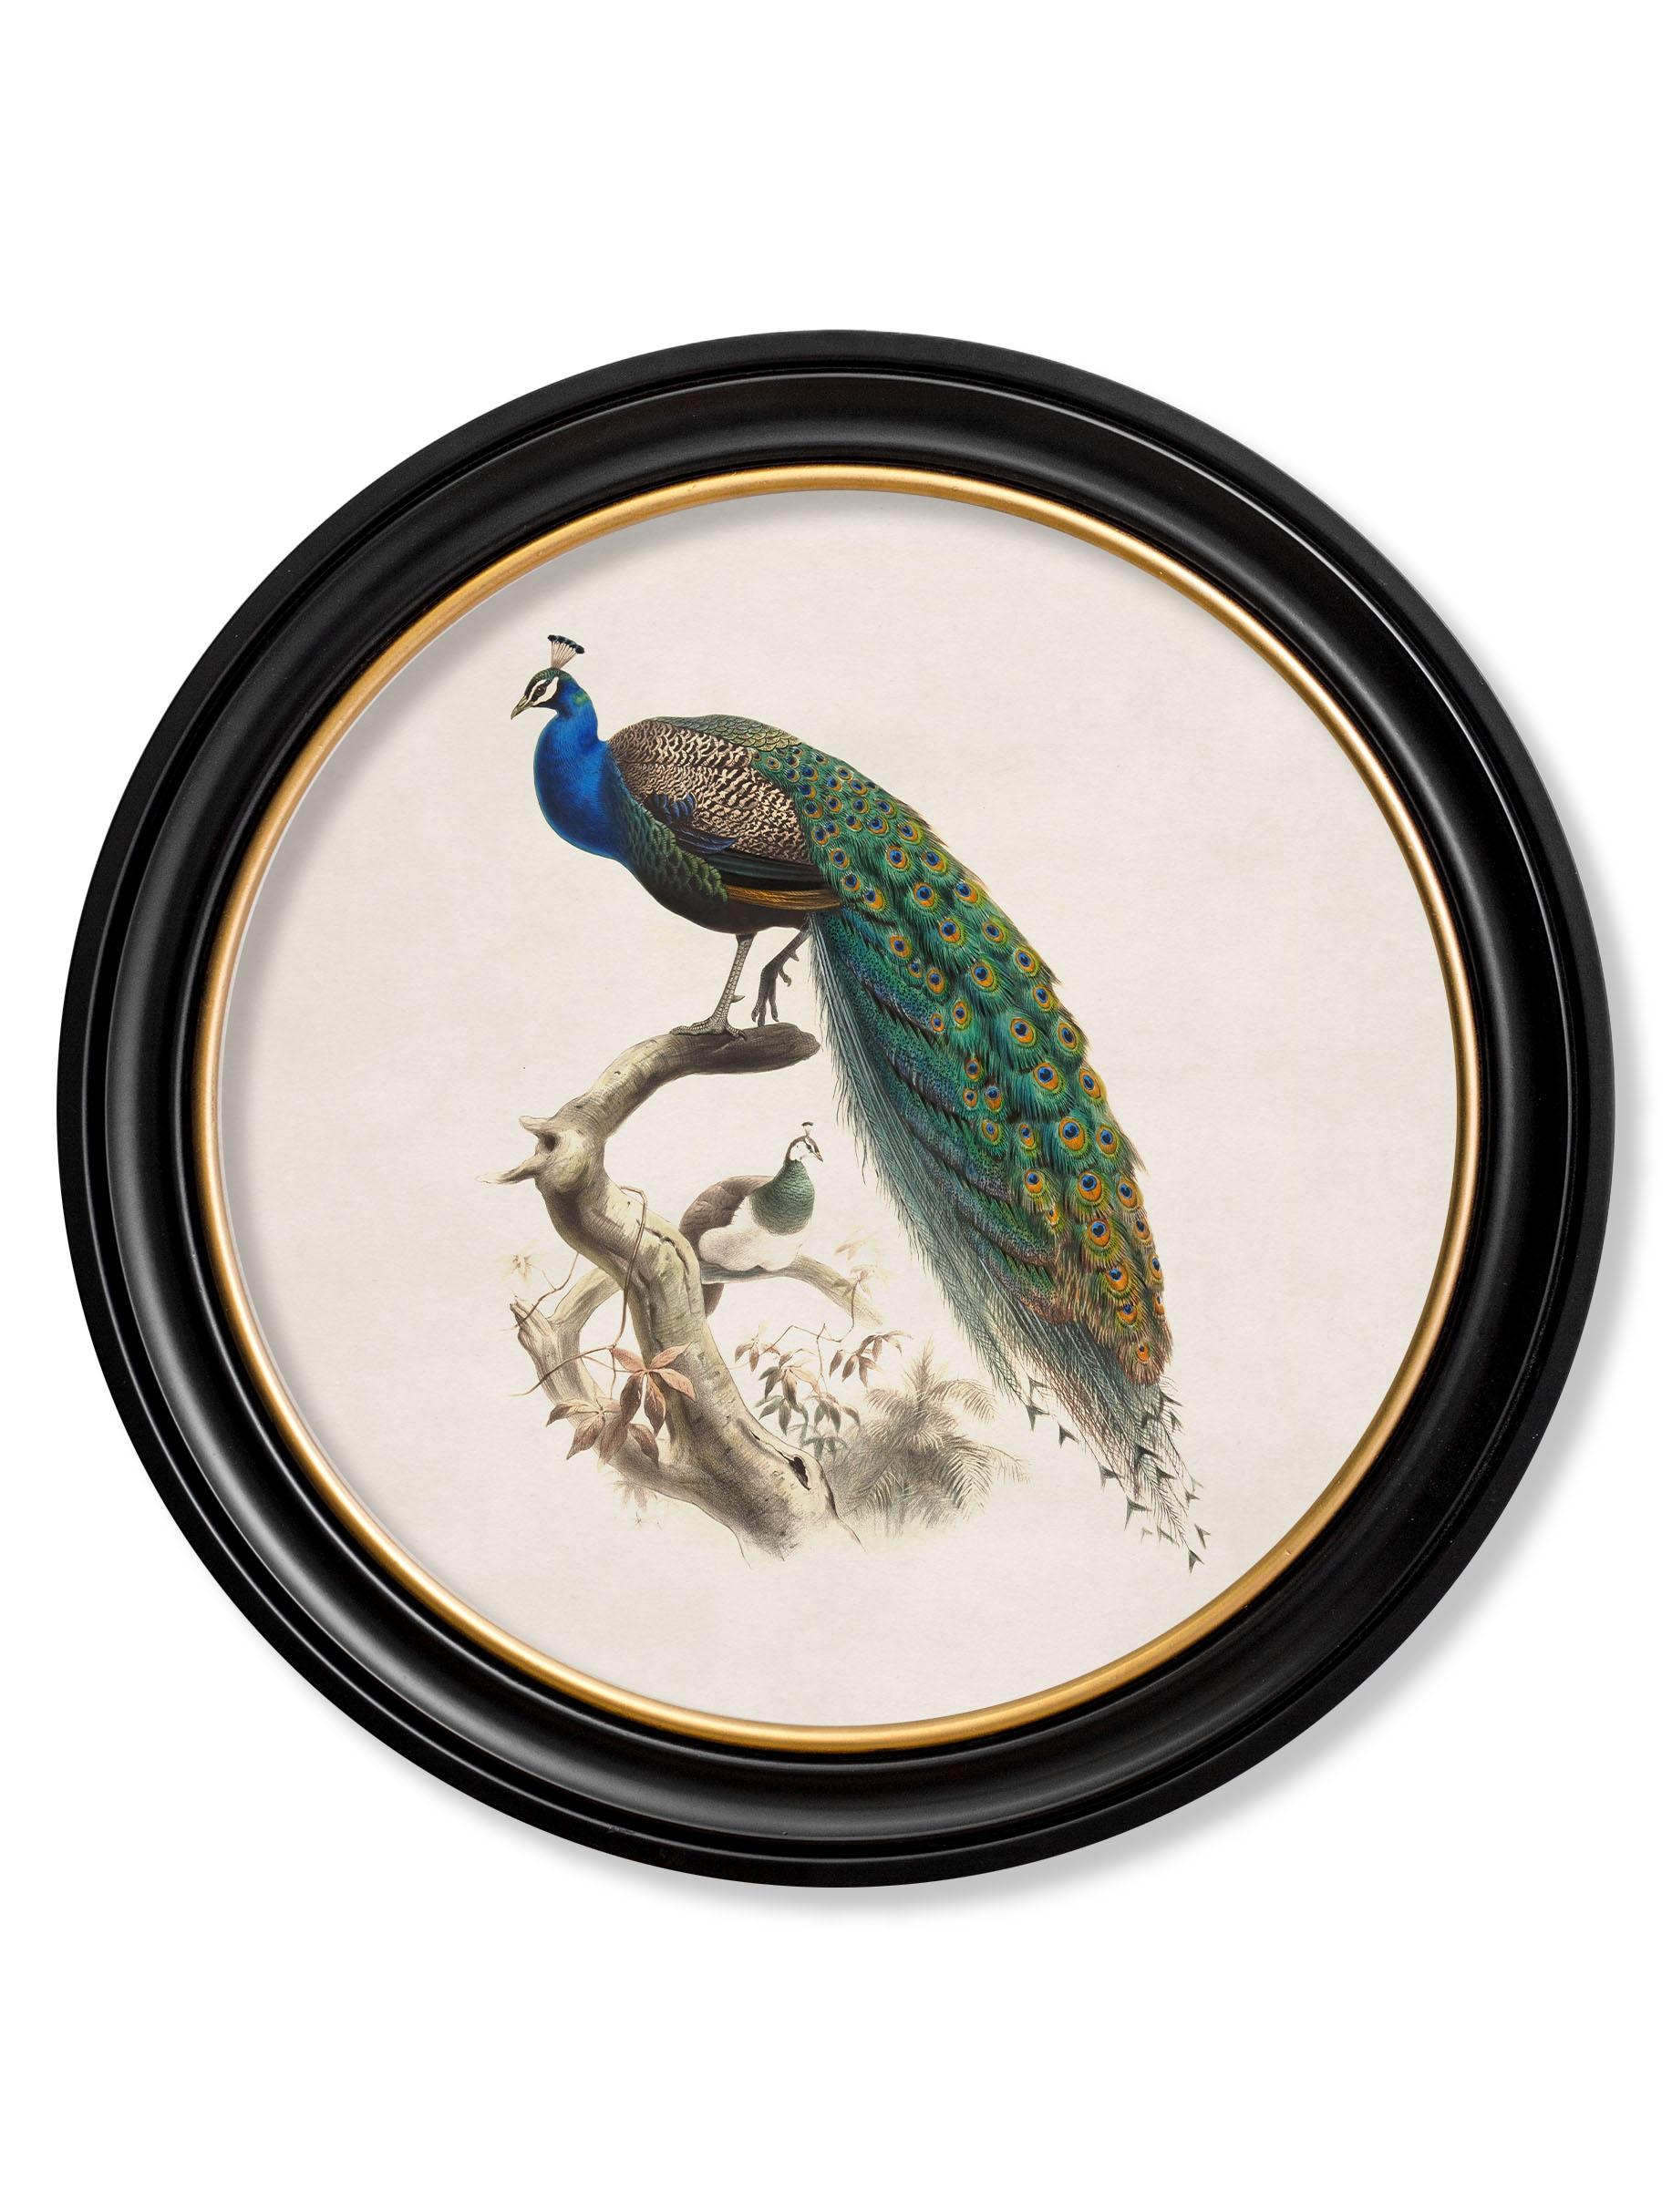 peacock history